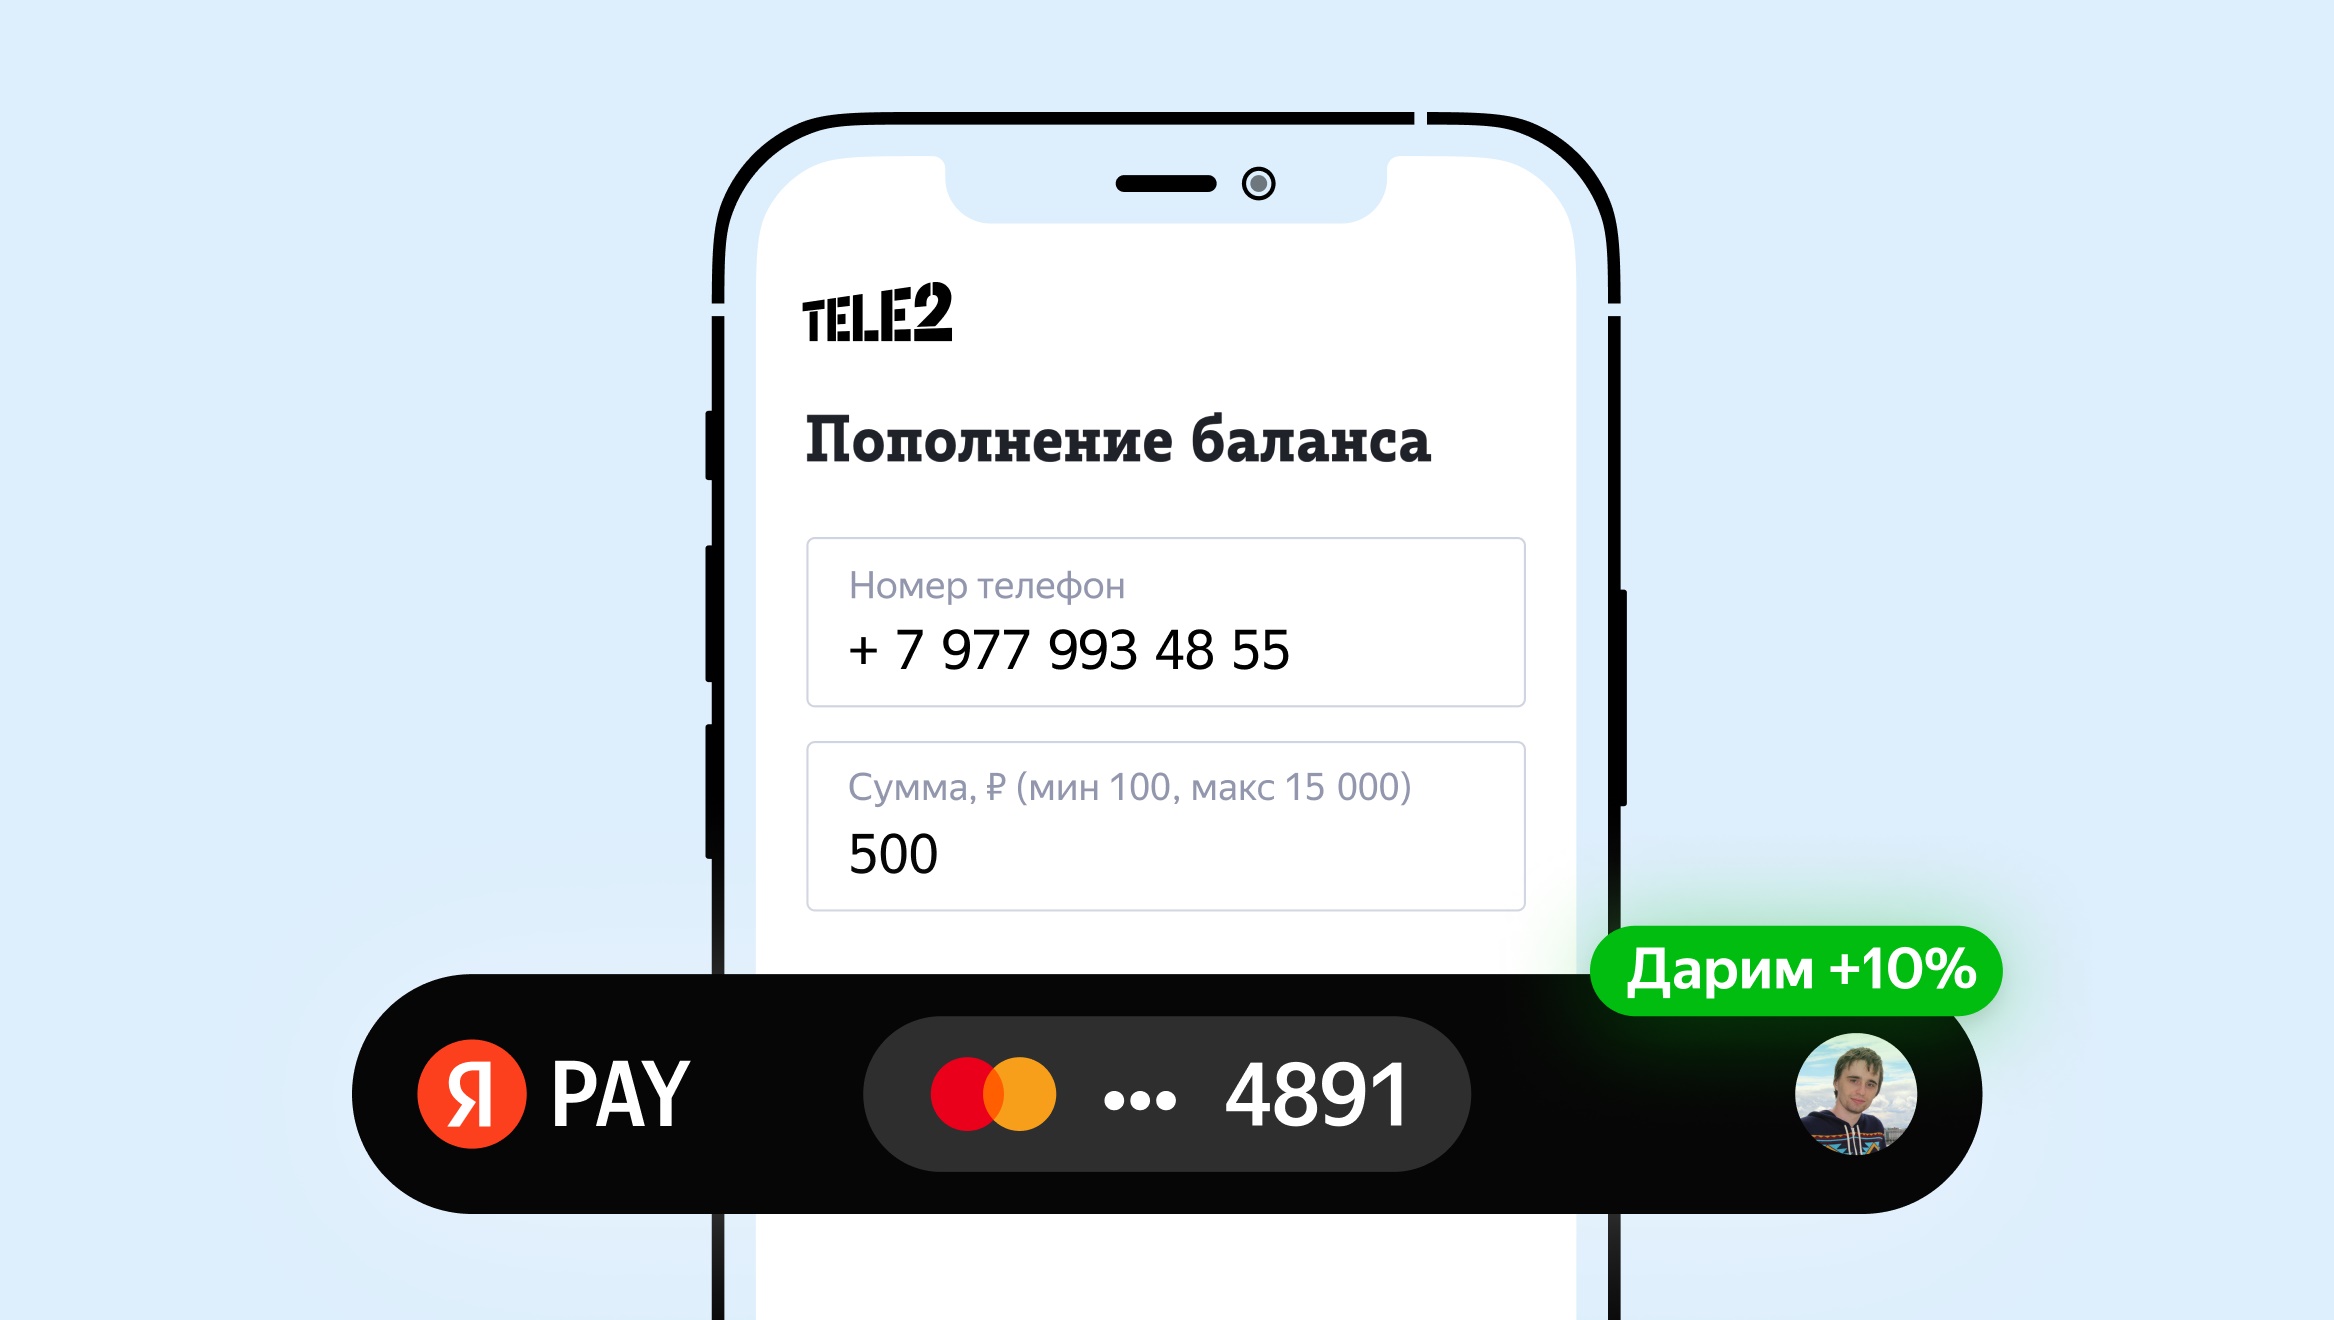 TELE2 — Мобильный перевод, перевод баланса на другой номер